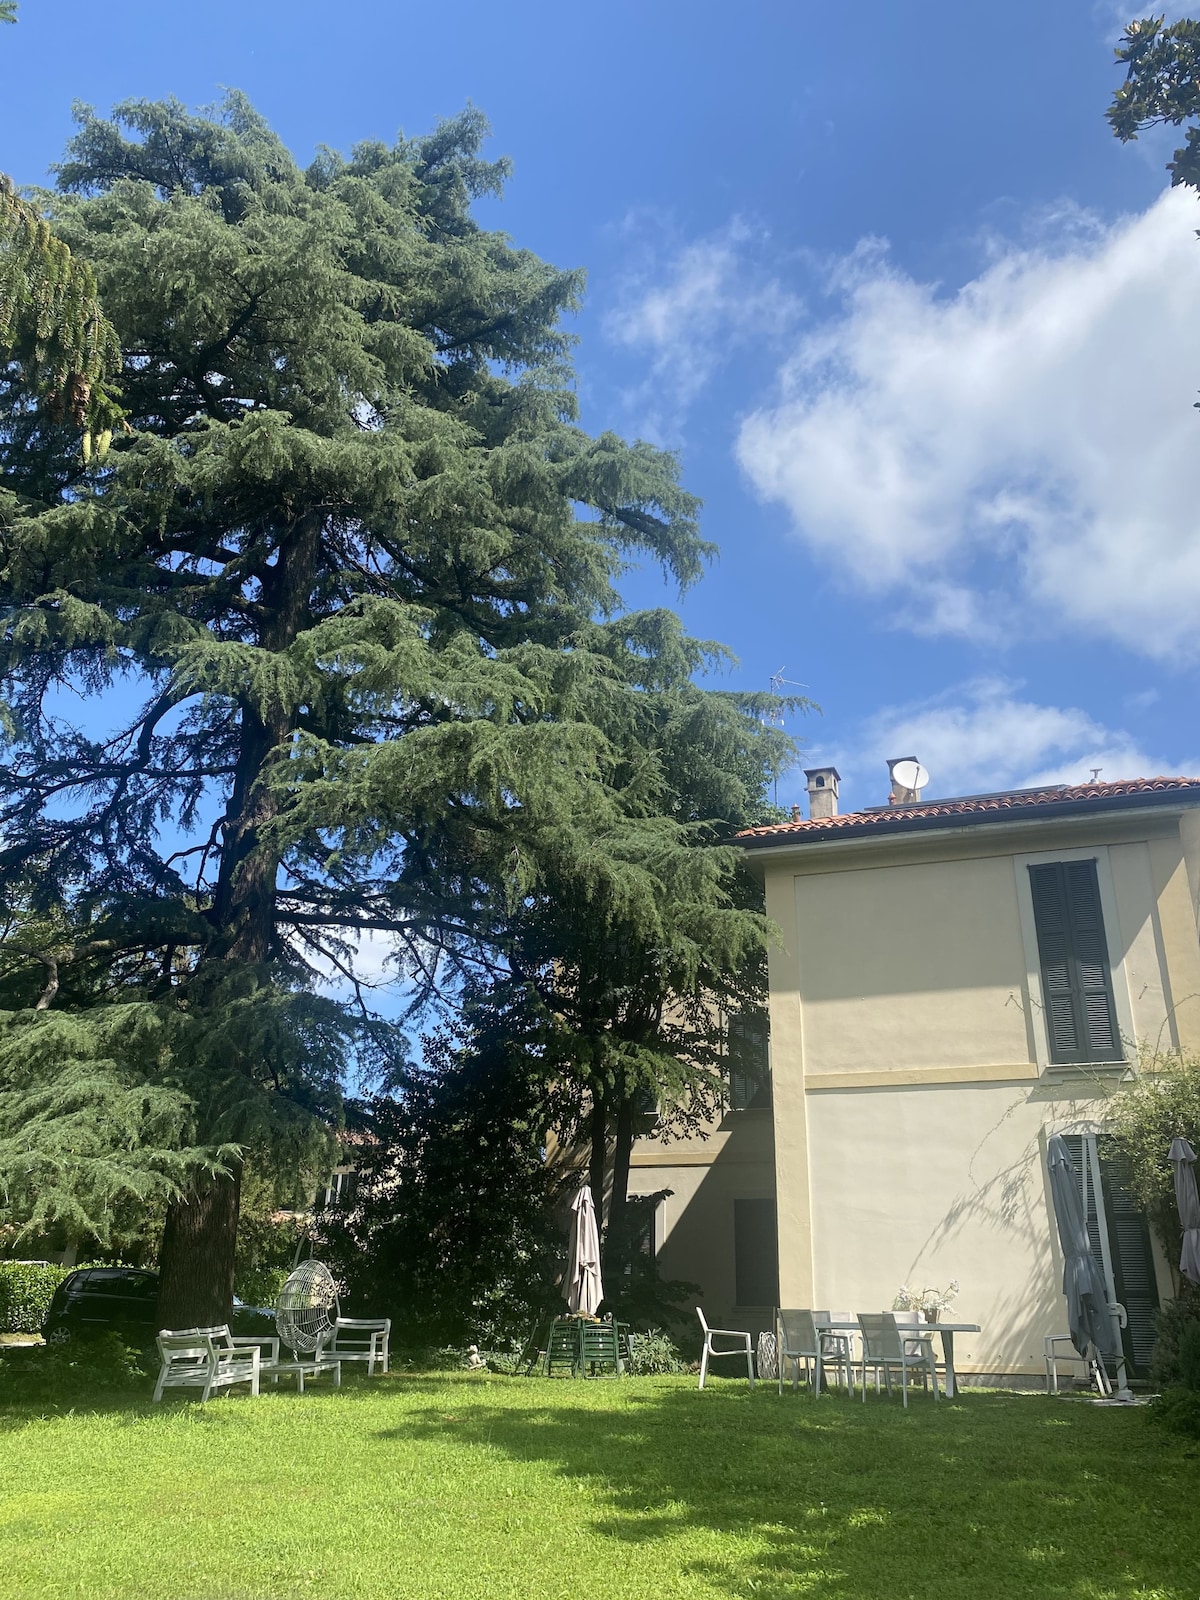 Casa di Ale -
Peace and nature near the City